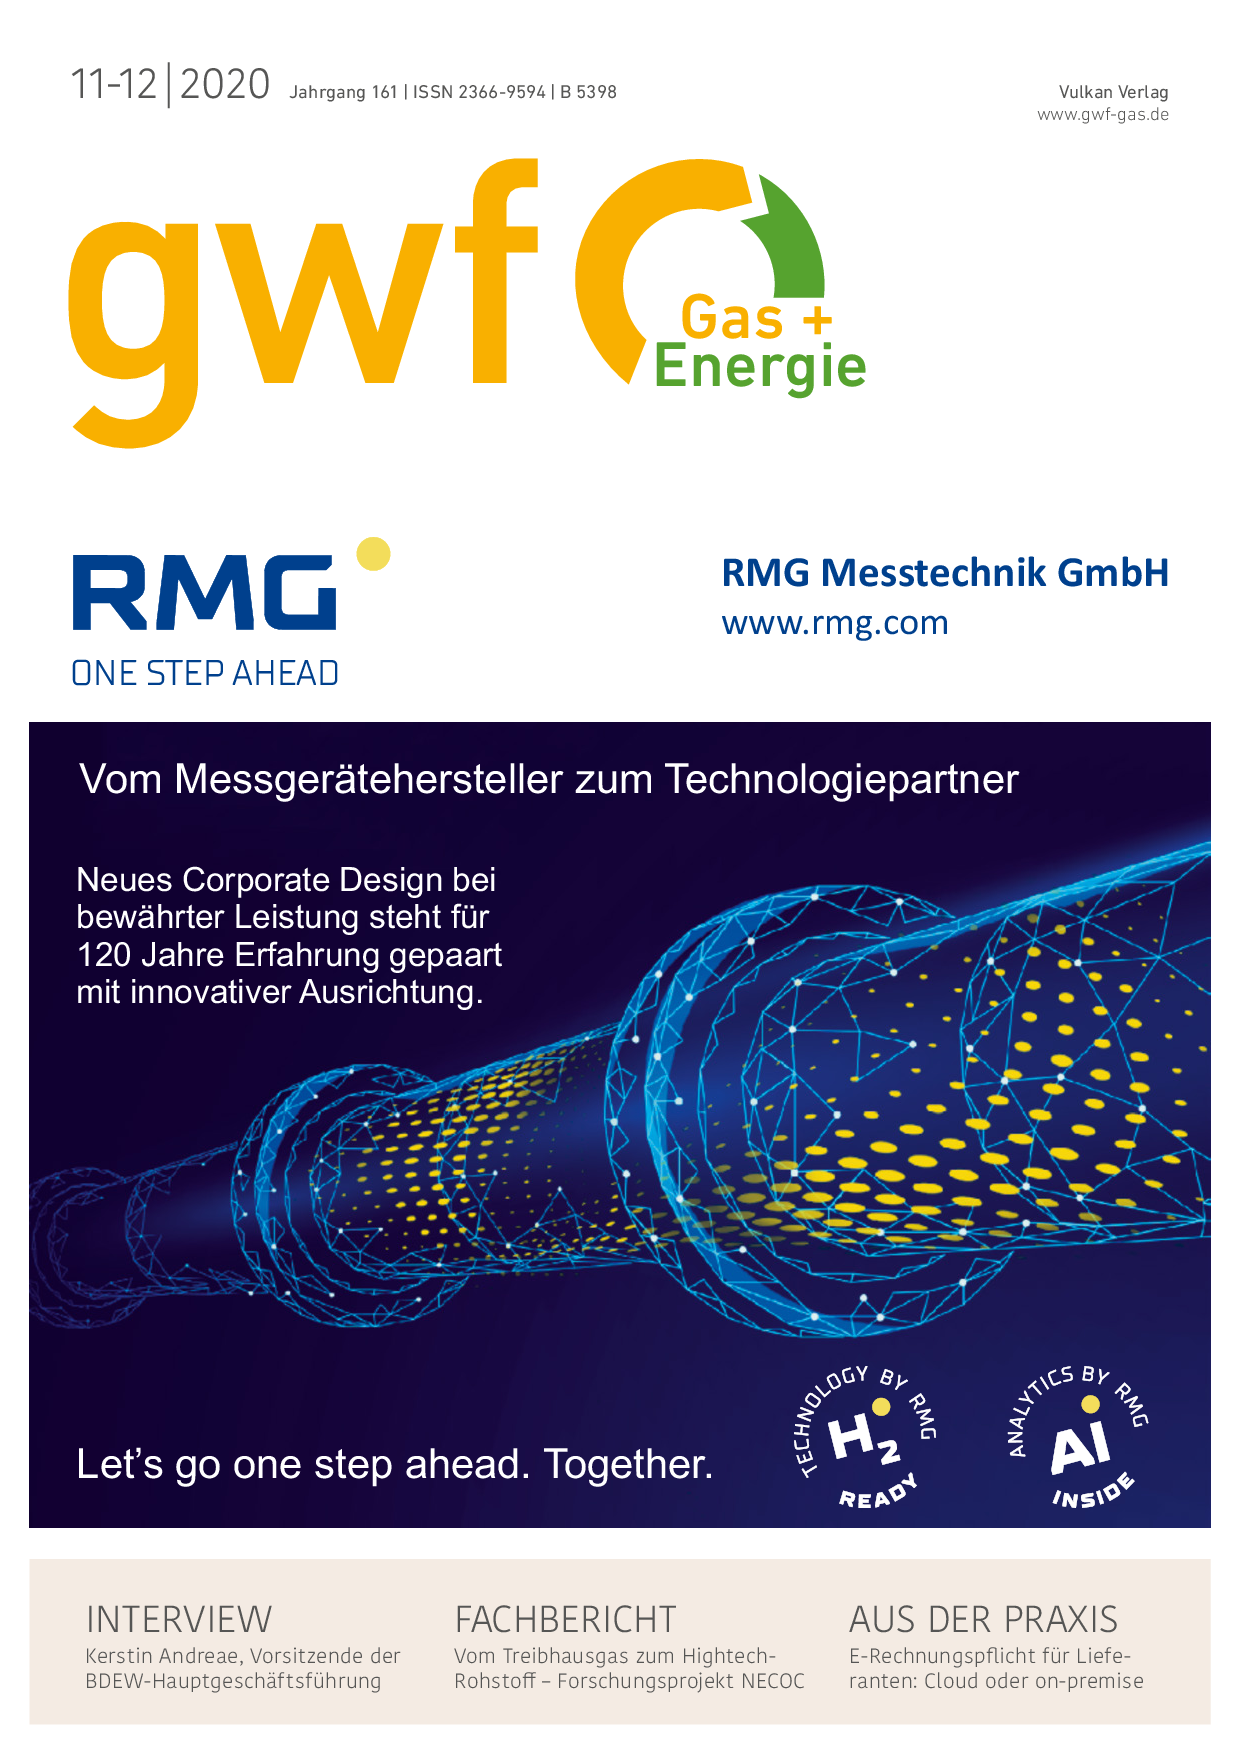 gwf Gas+Energie - 11-12 2020